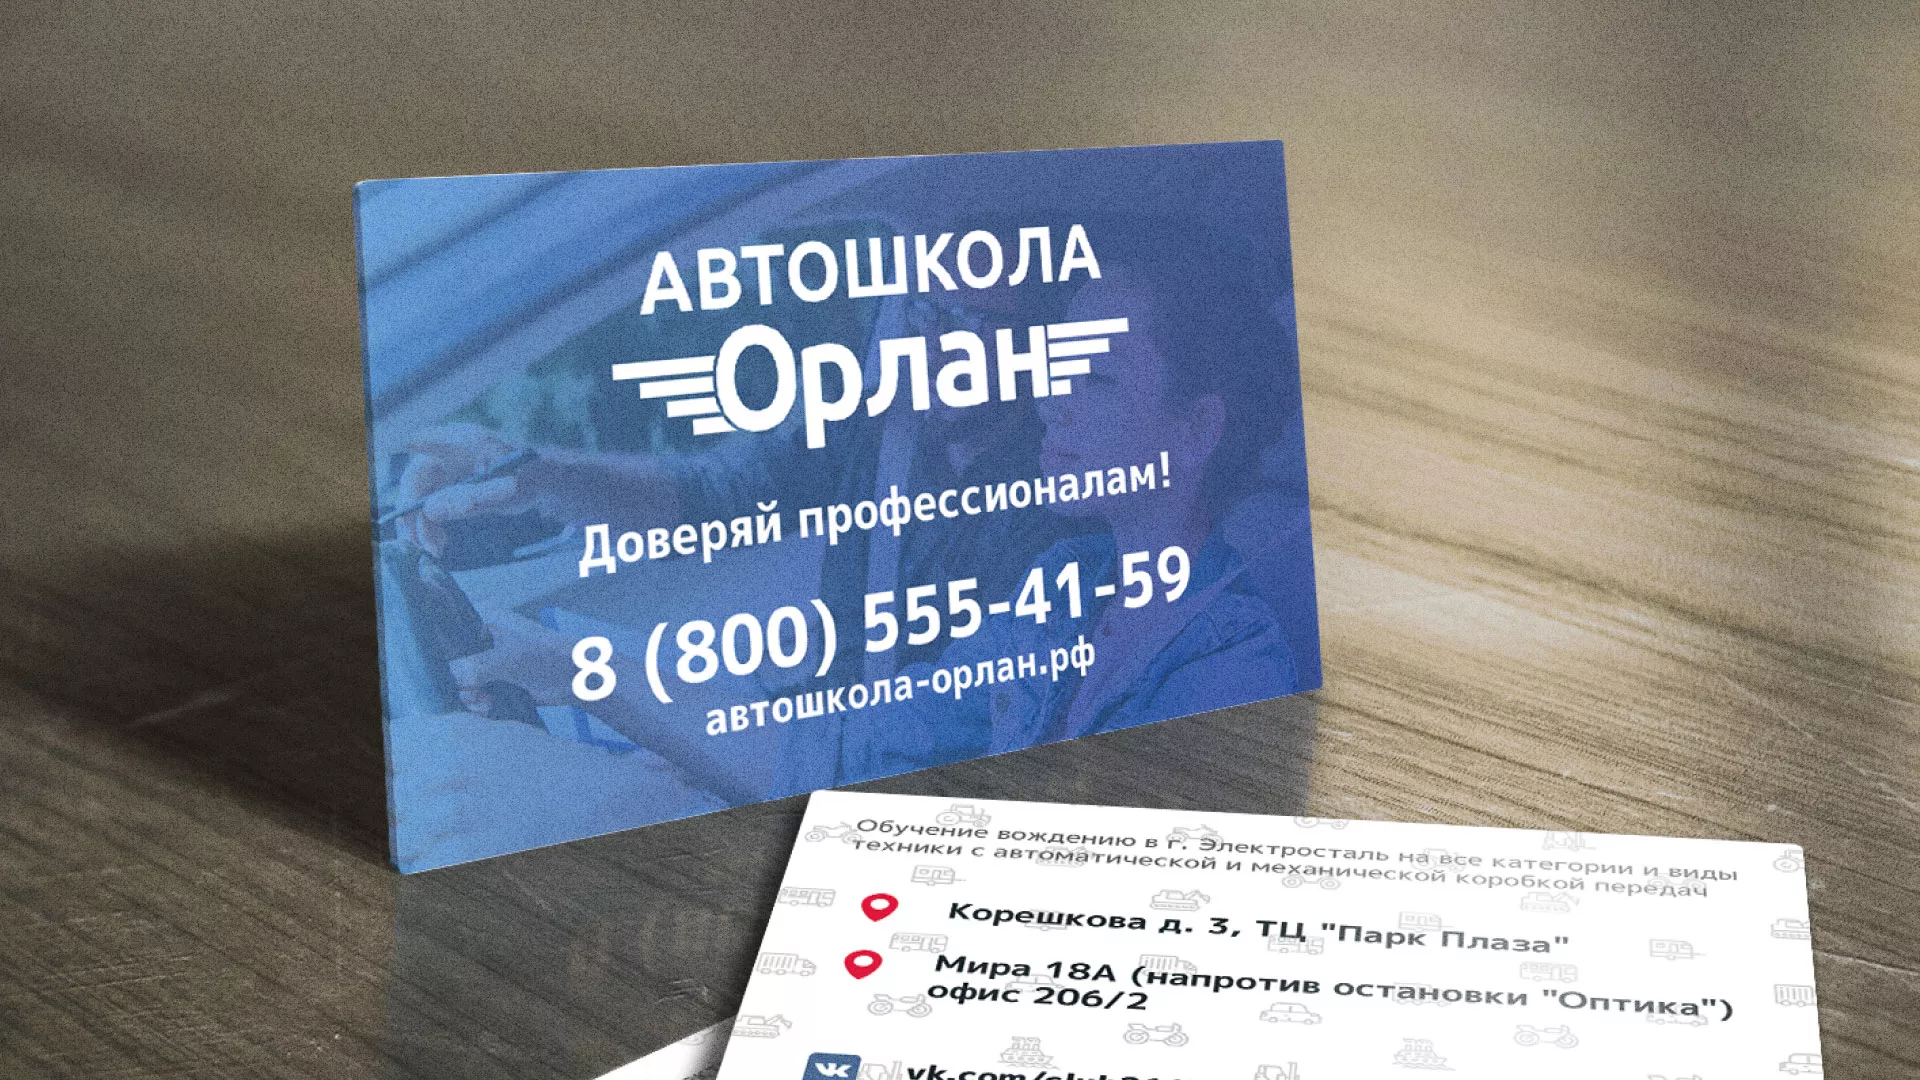 Дизайн рекламных визиток для автошколы «Орлан» в Пудоже